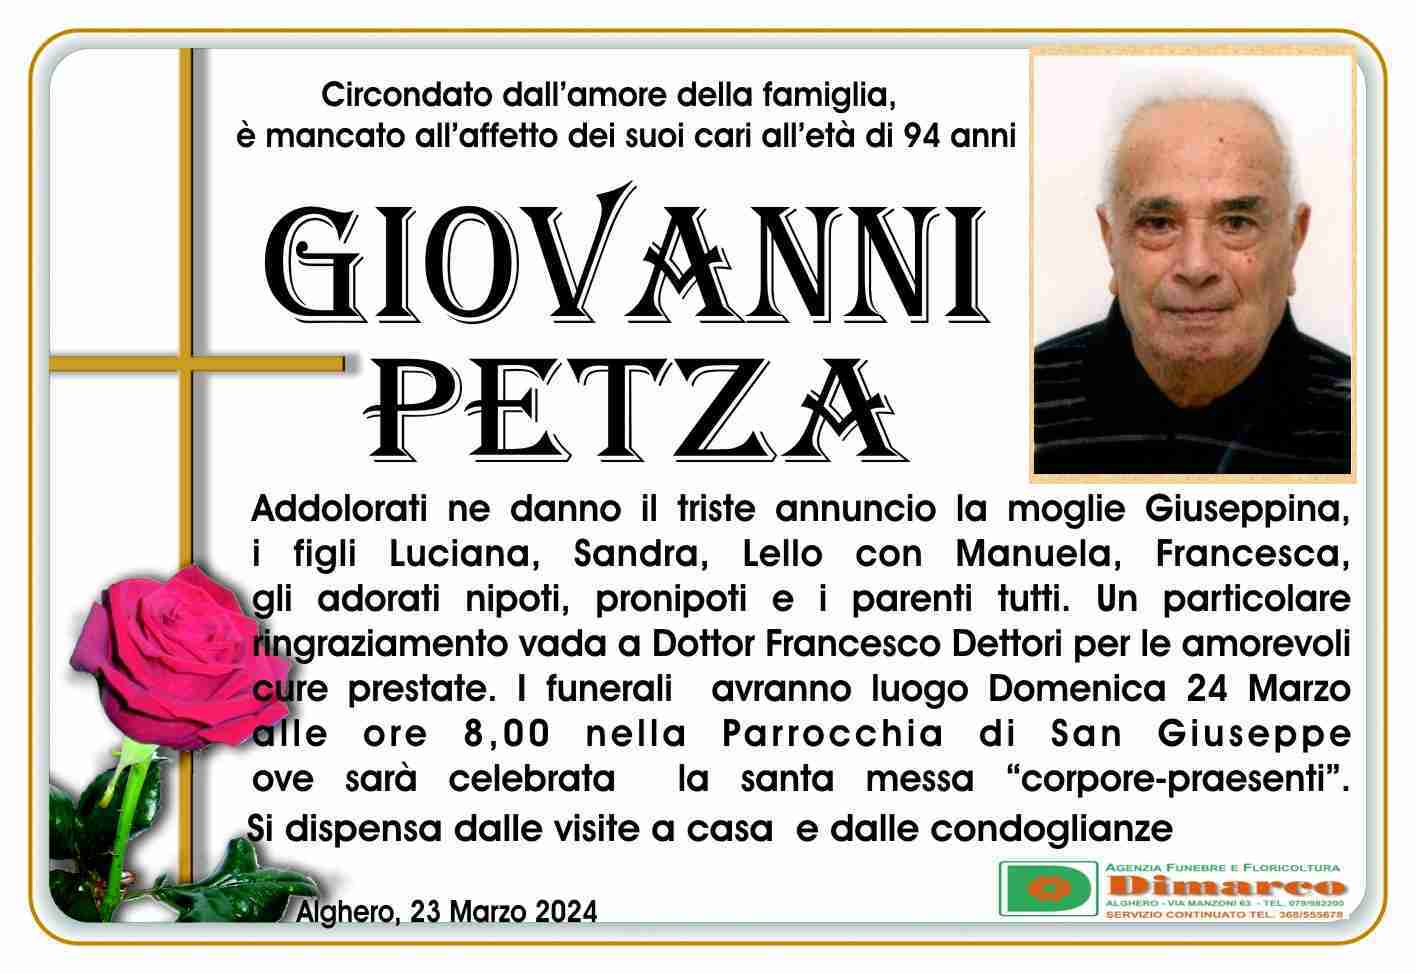 Giovanni Petza